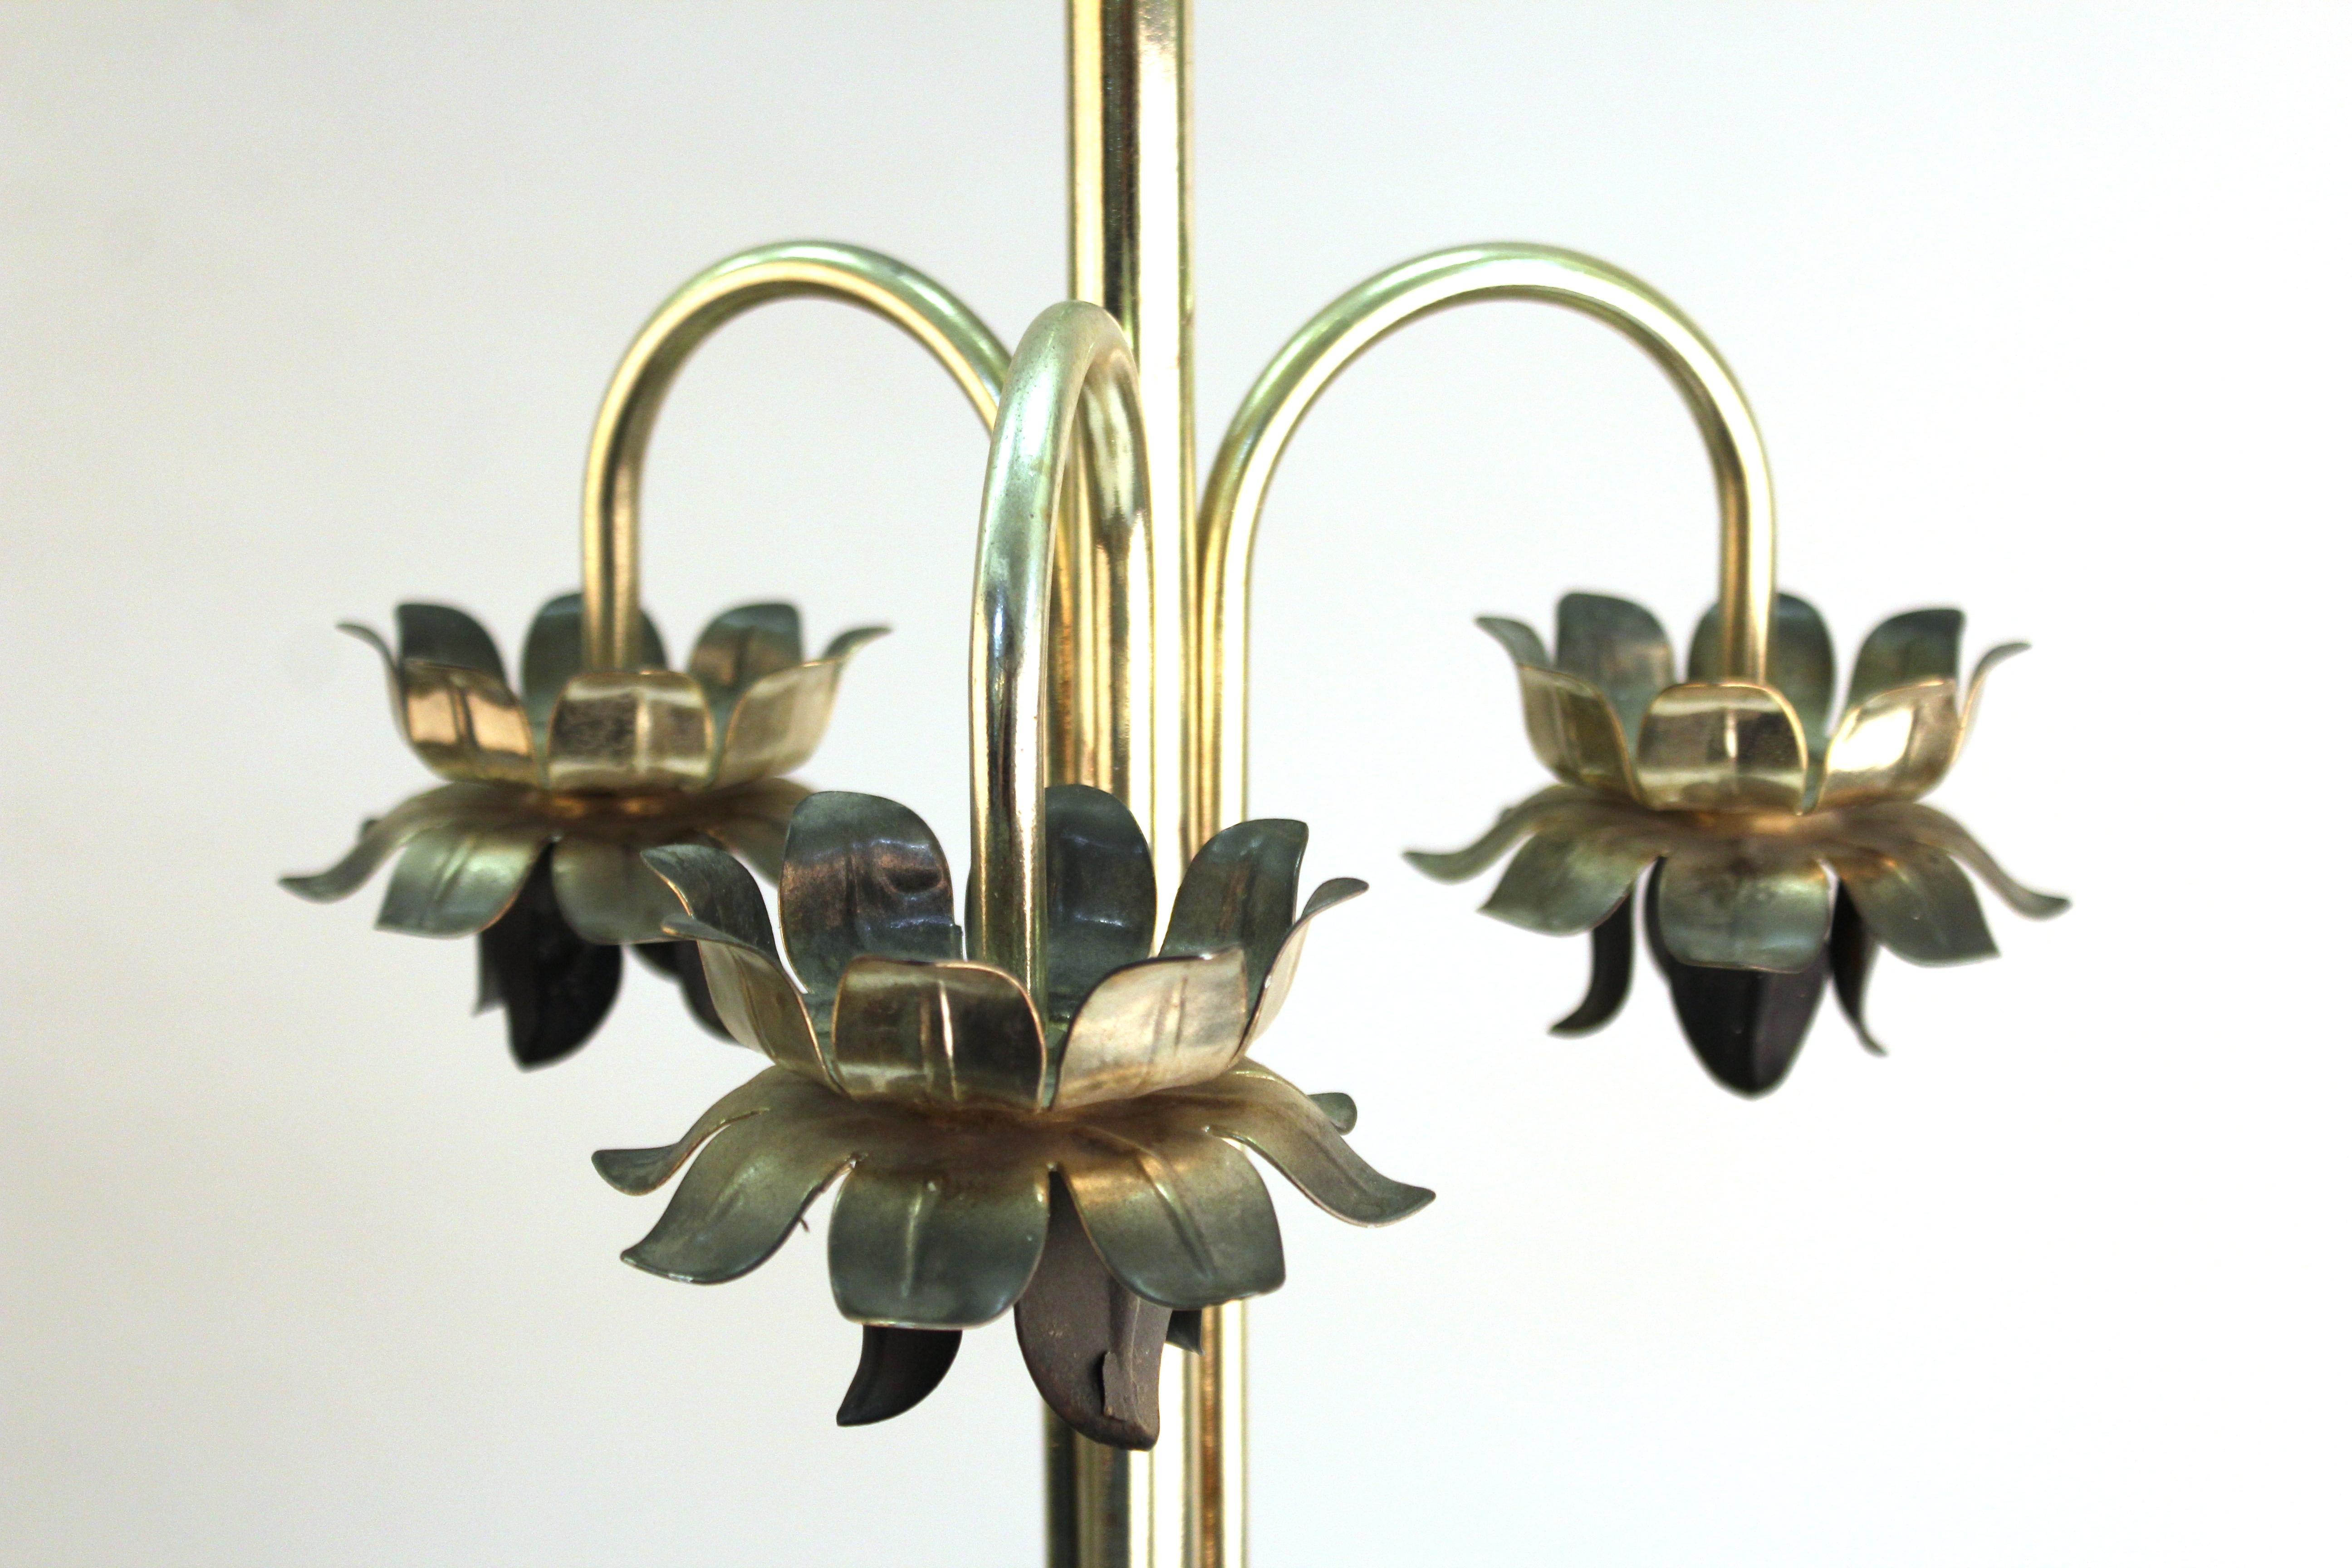 Moderne Tischlampe aus Metall mit geschwungenen Blättern an der runden Basis und drei Blütenknospen mit Blütenblättern. Zwei Glühbirnenfassungen auf der Oberseite. Das Stück ist in einem tollen Vintage-Zustand mit altersgemäßer Abnutzung.